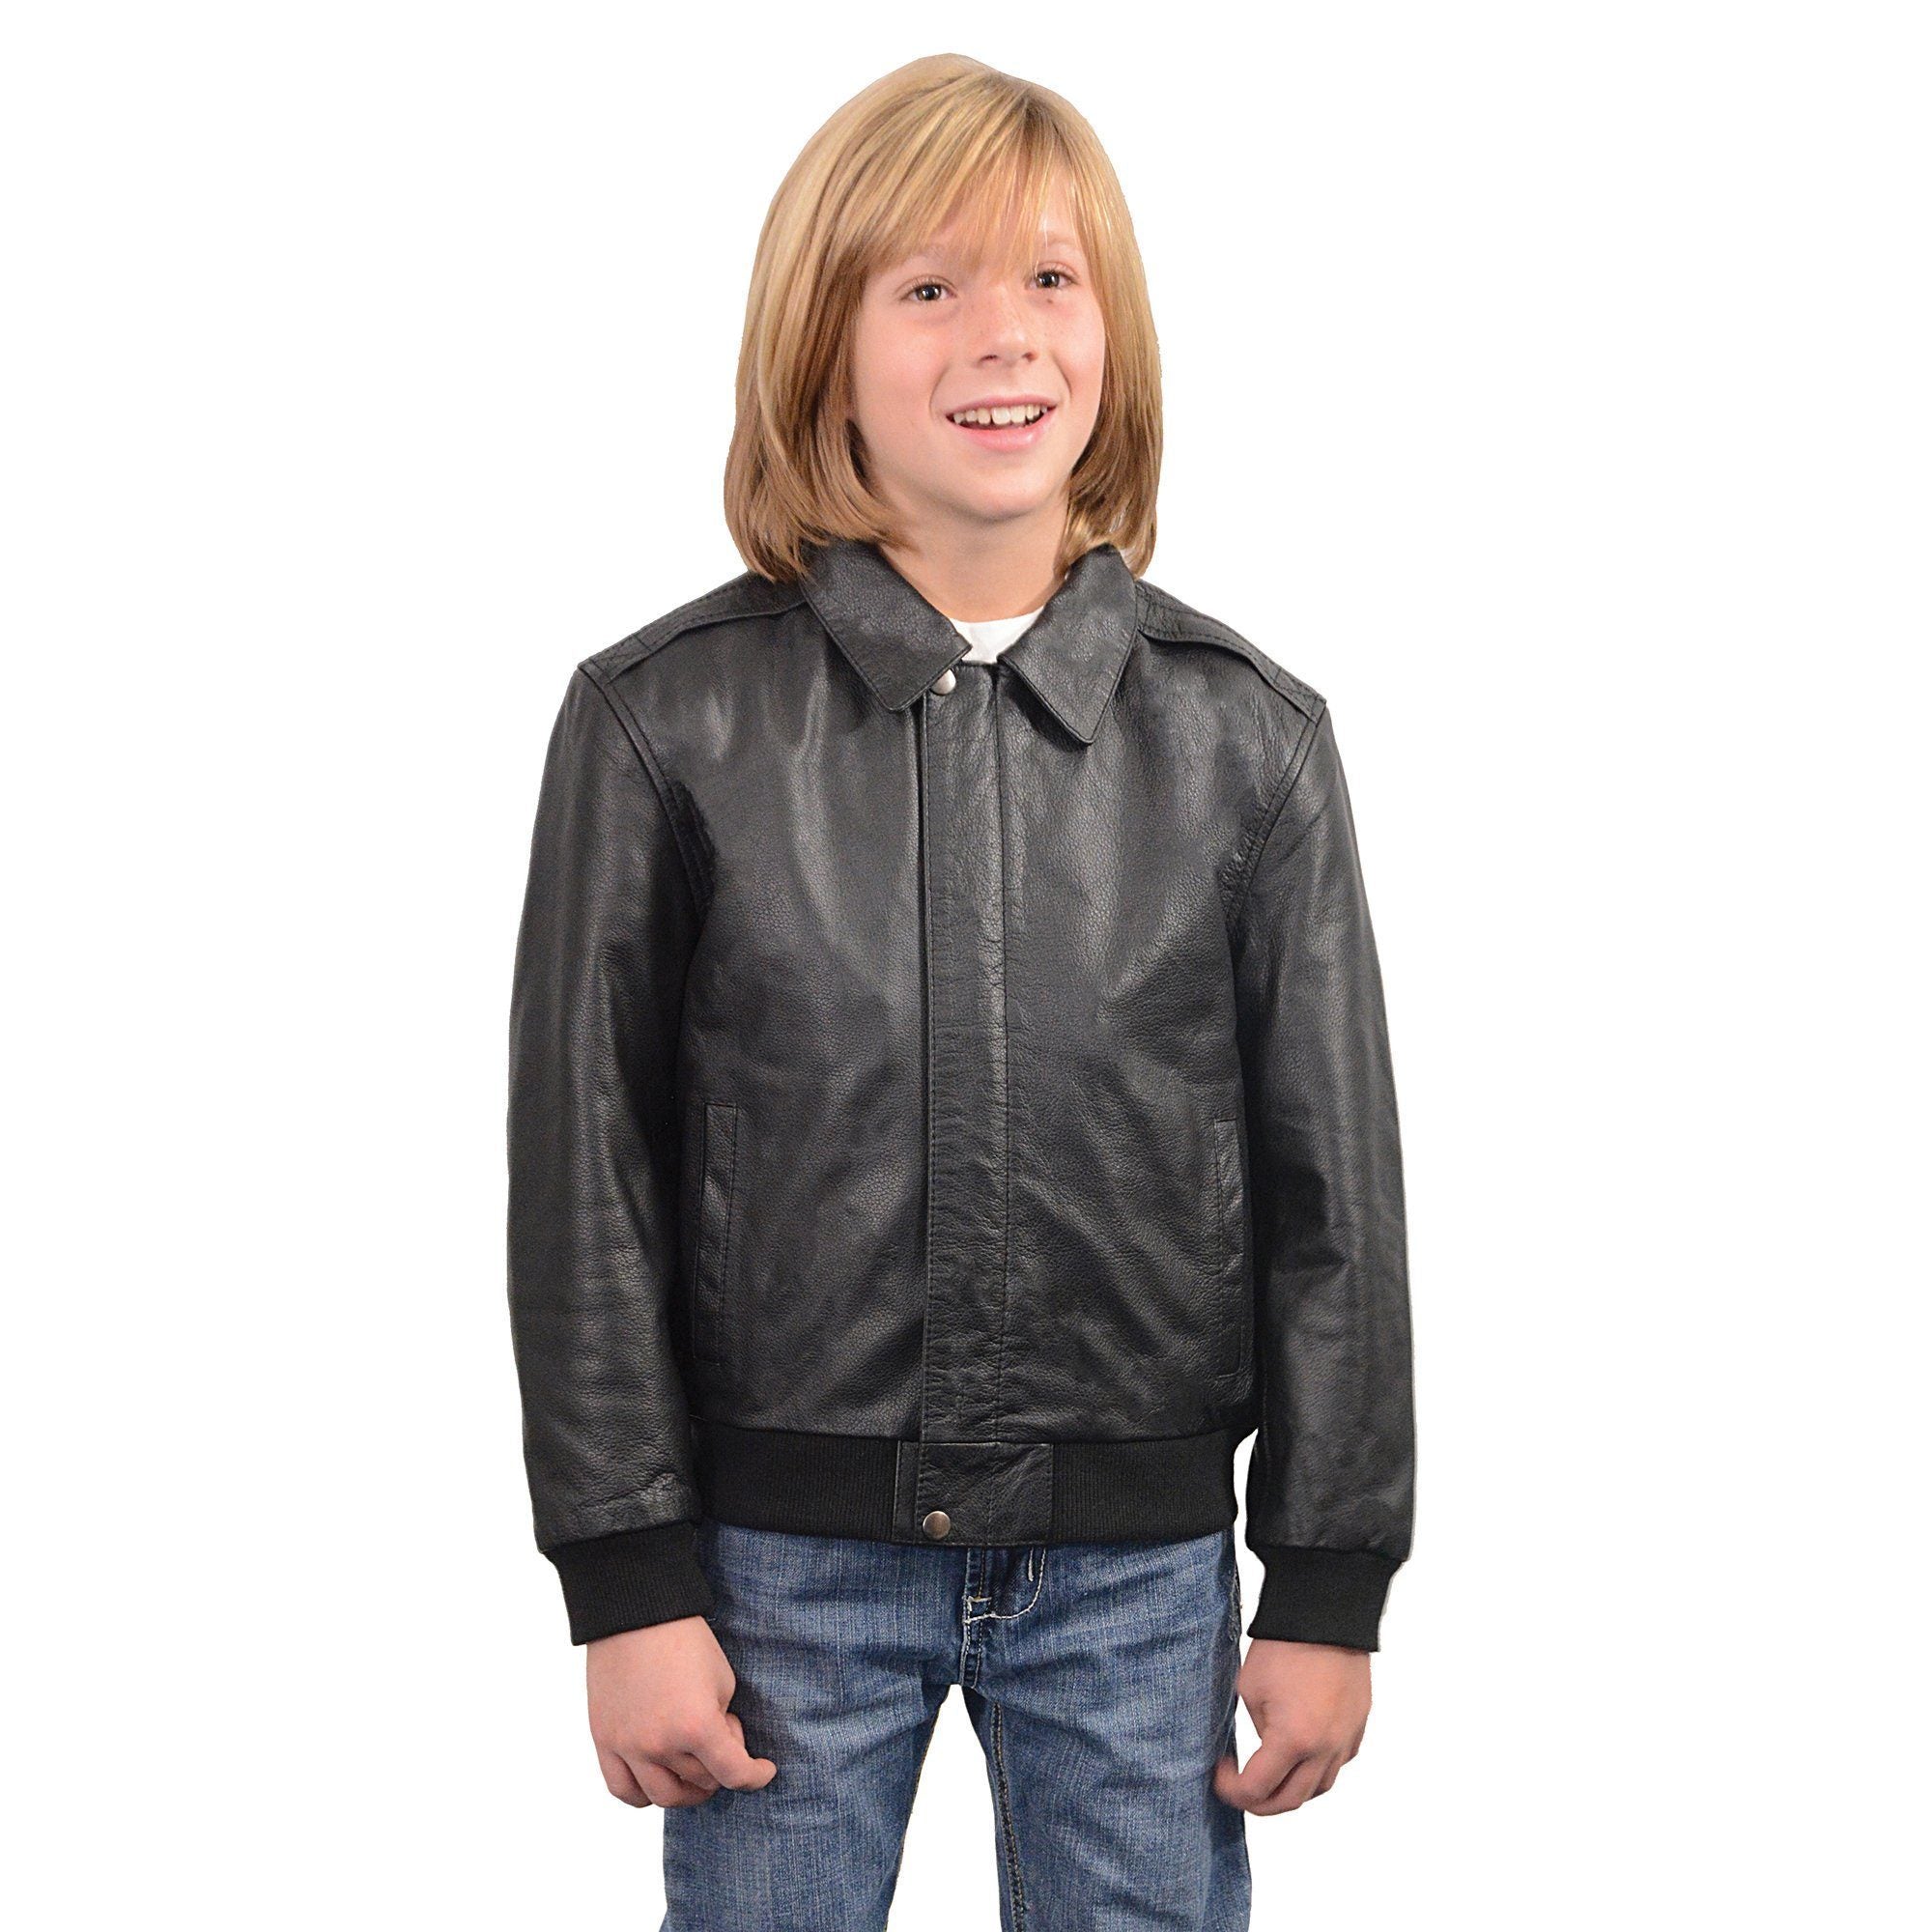 Milwaukee Leather LKK1930 Youth Size Black Leather Bomber Jacket - Milwaukee Leather Boys Leather Jackets